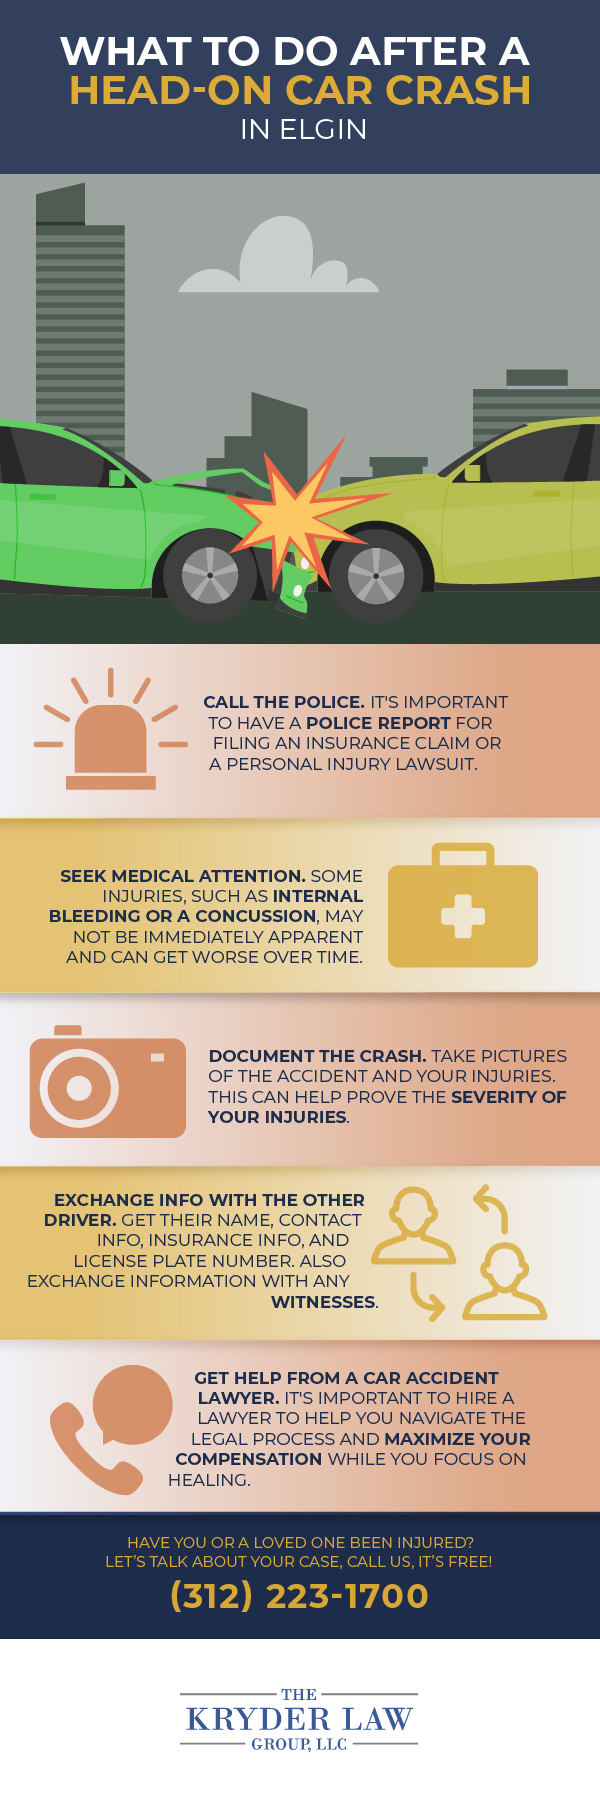 Infografía sobre qué hacer después de un accidente automovilístico frontal en Elgin